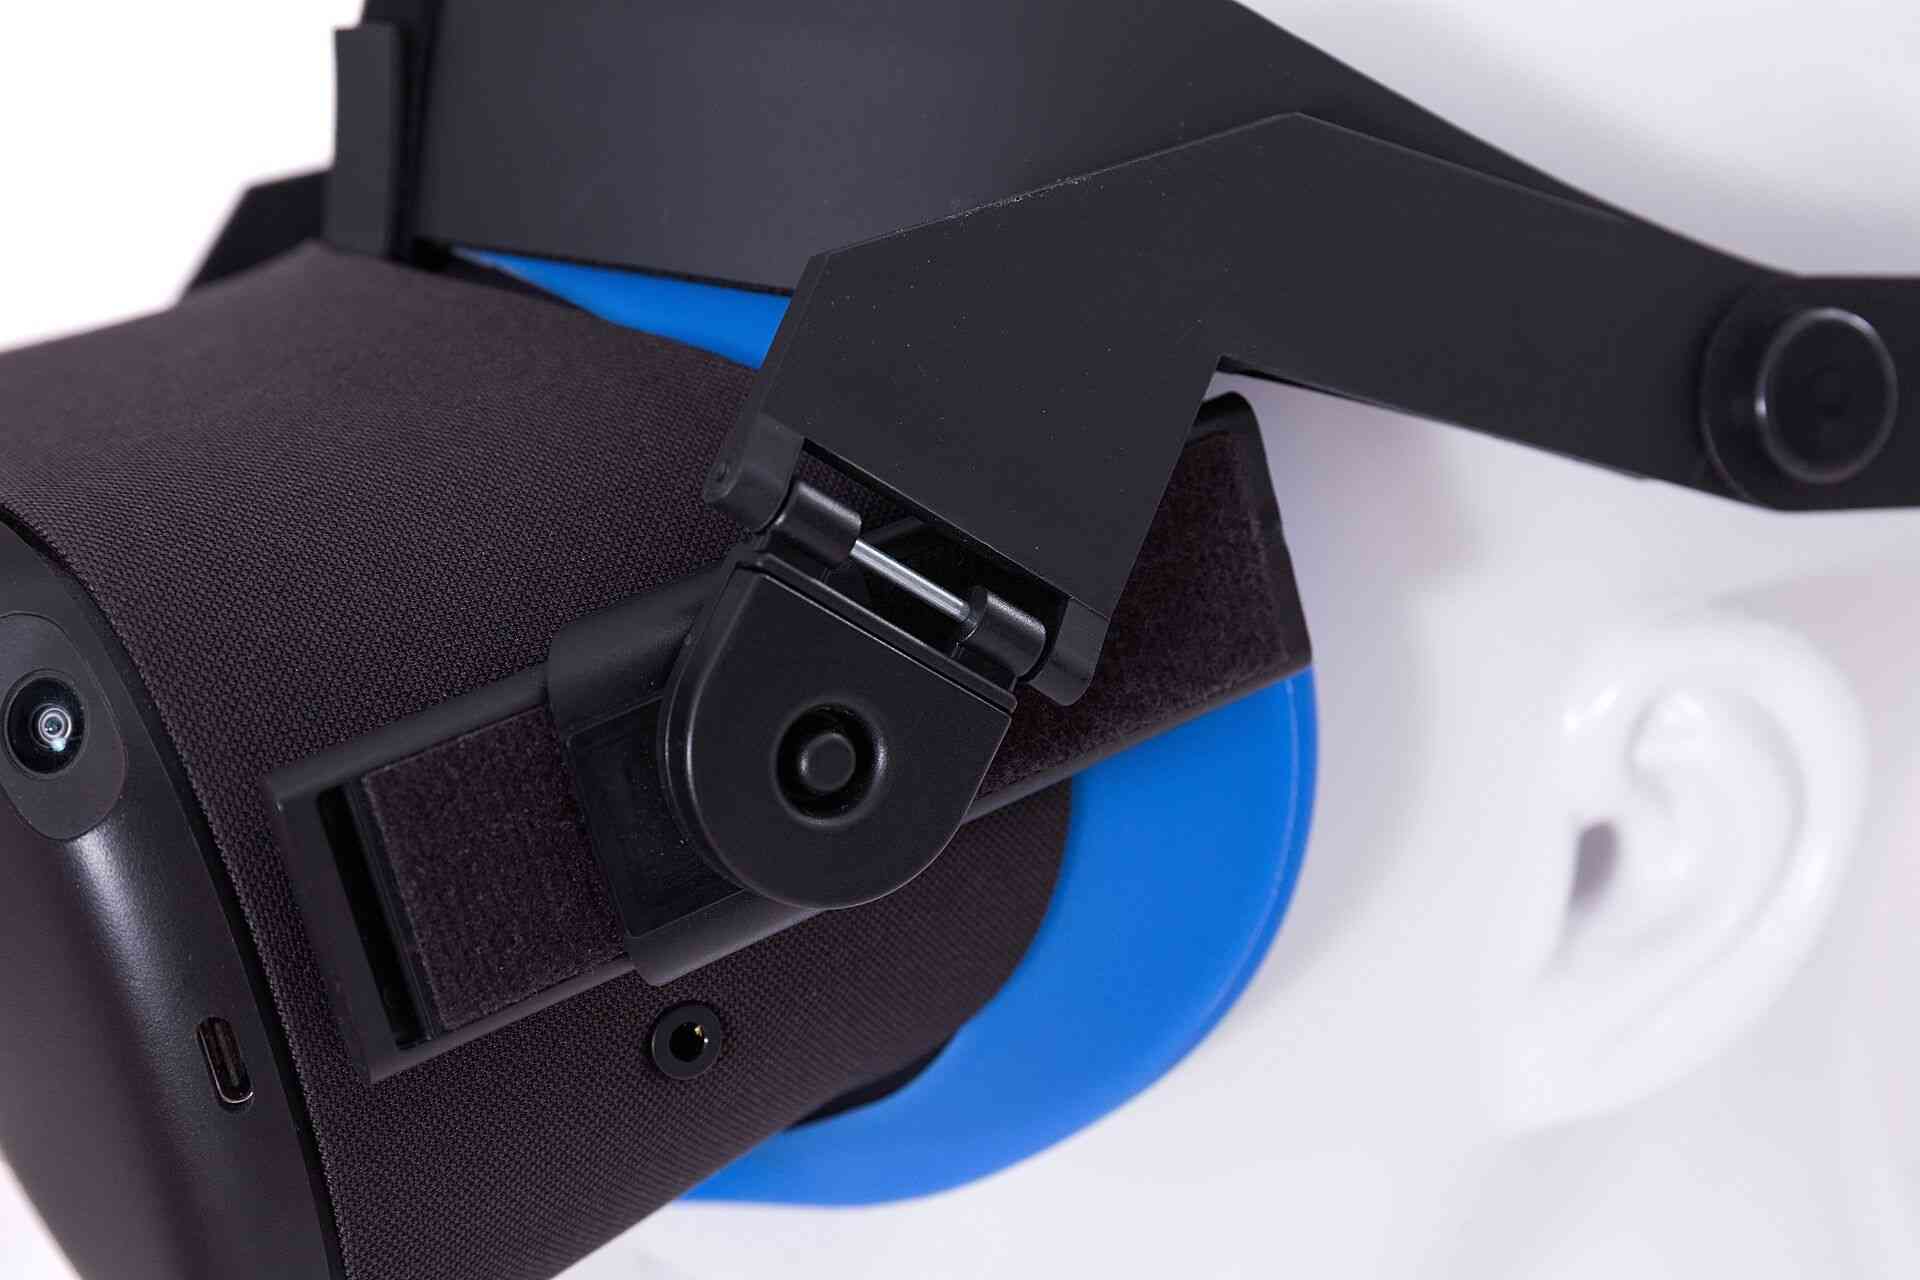 Halo Strap-bequeme und verstellbare Kopfbedeckung aus virtueller Realität